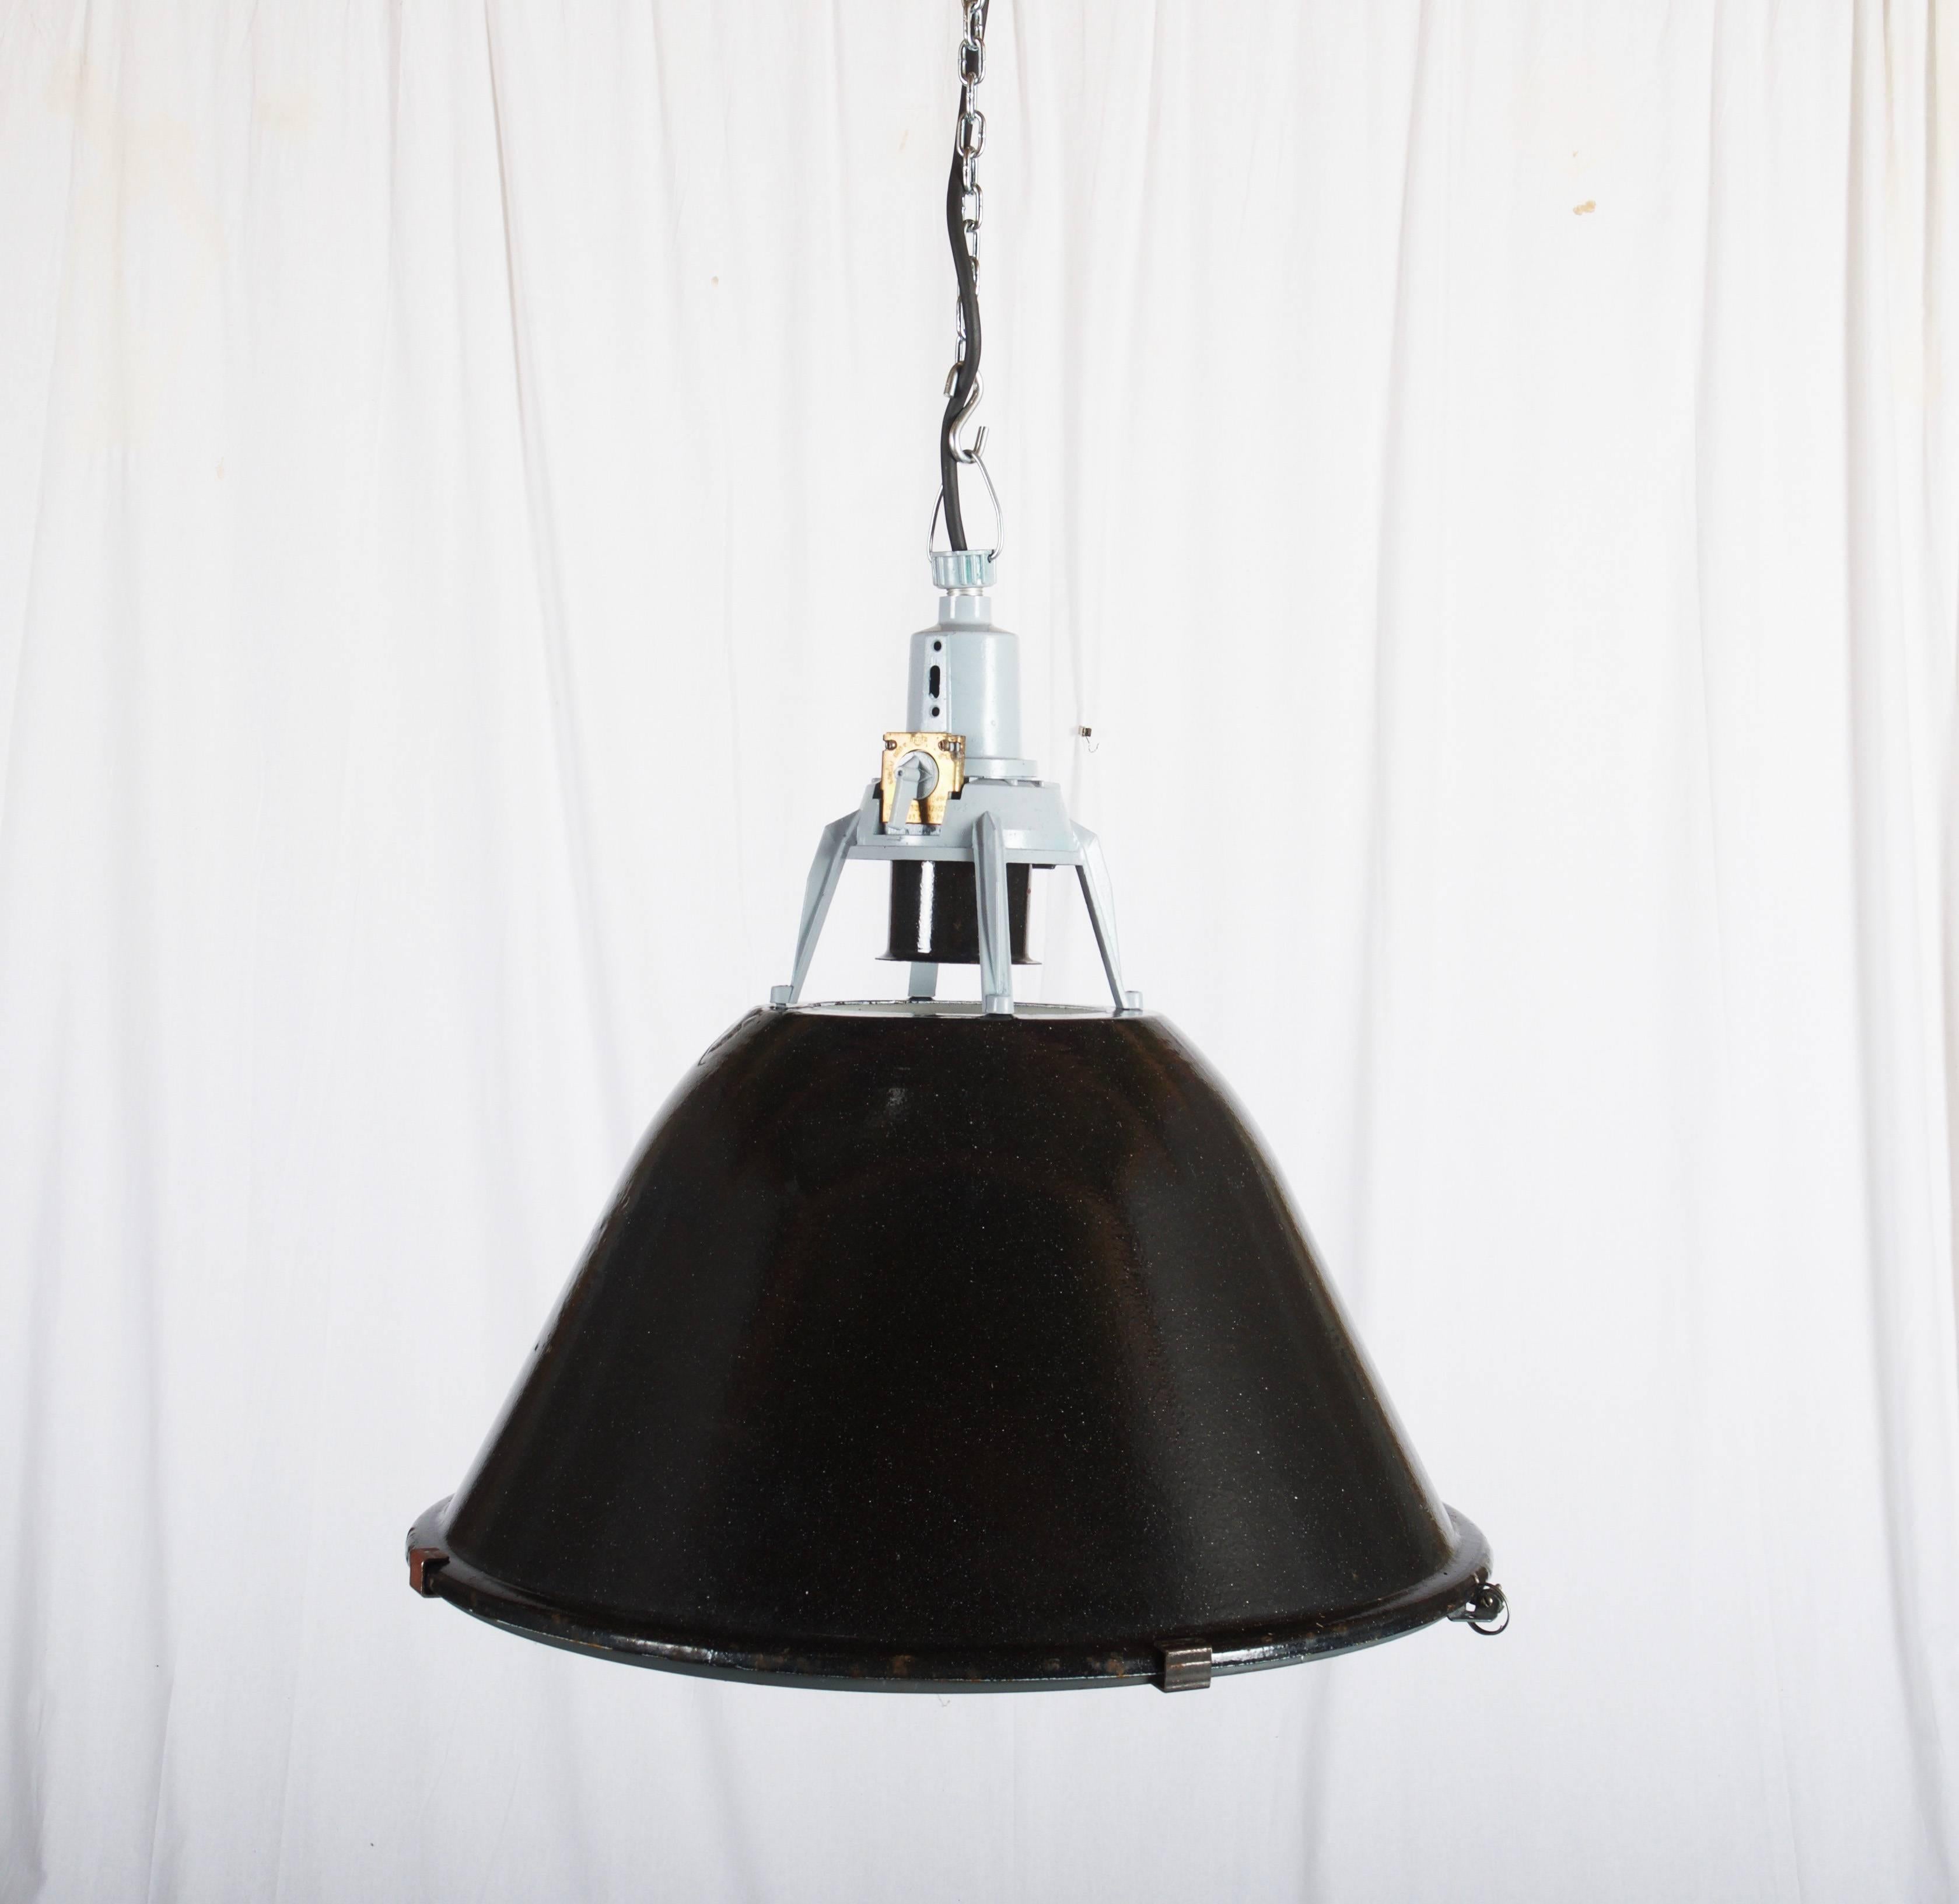 Czech Vintage Enamel Factory, Industrial Pendant Lamp For Sale